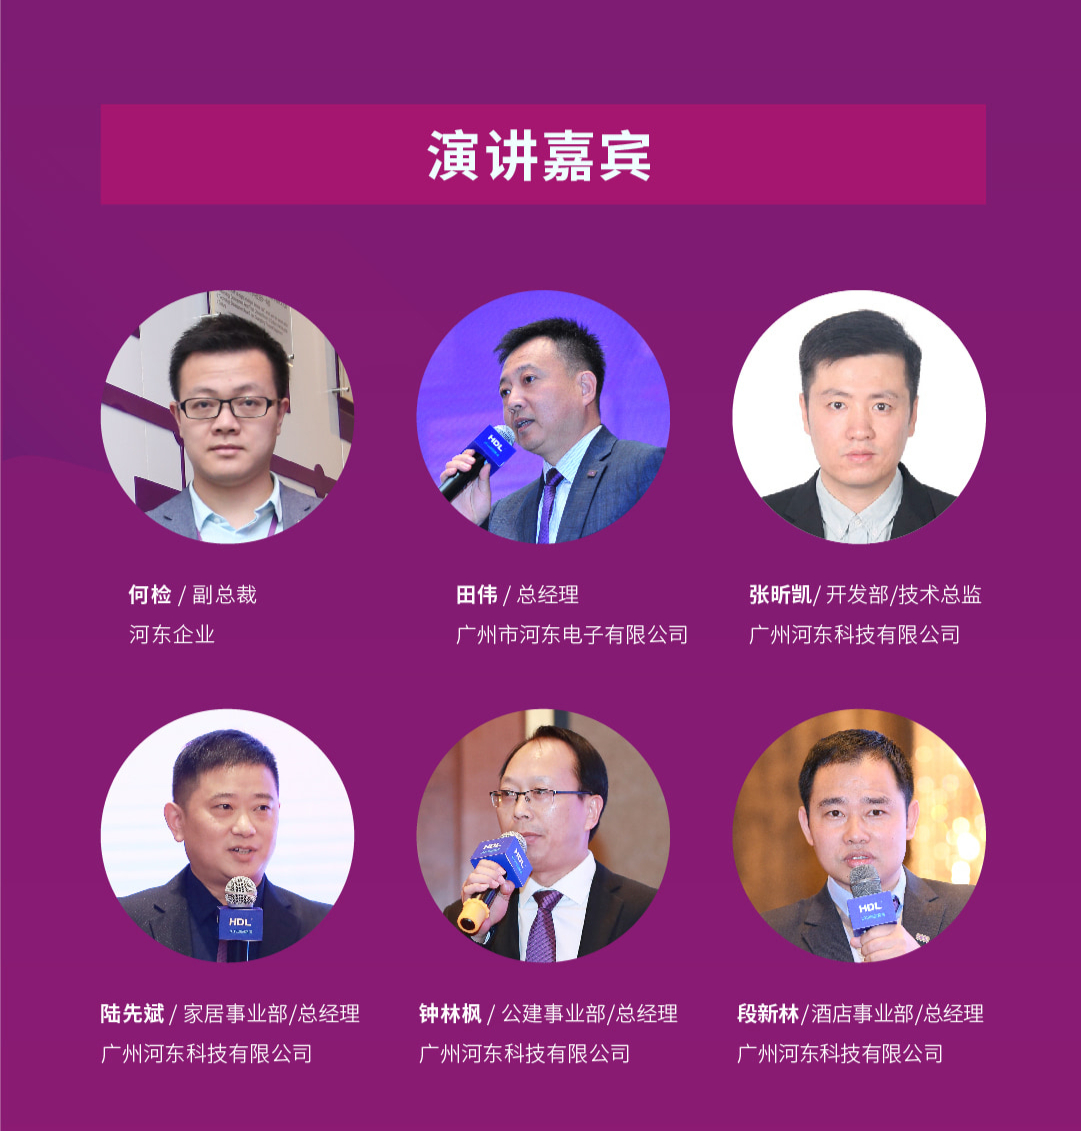 融合创新 智造未来——2019 HDL巡回路演（北京站）